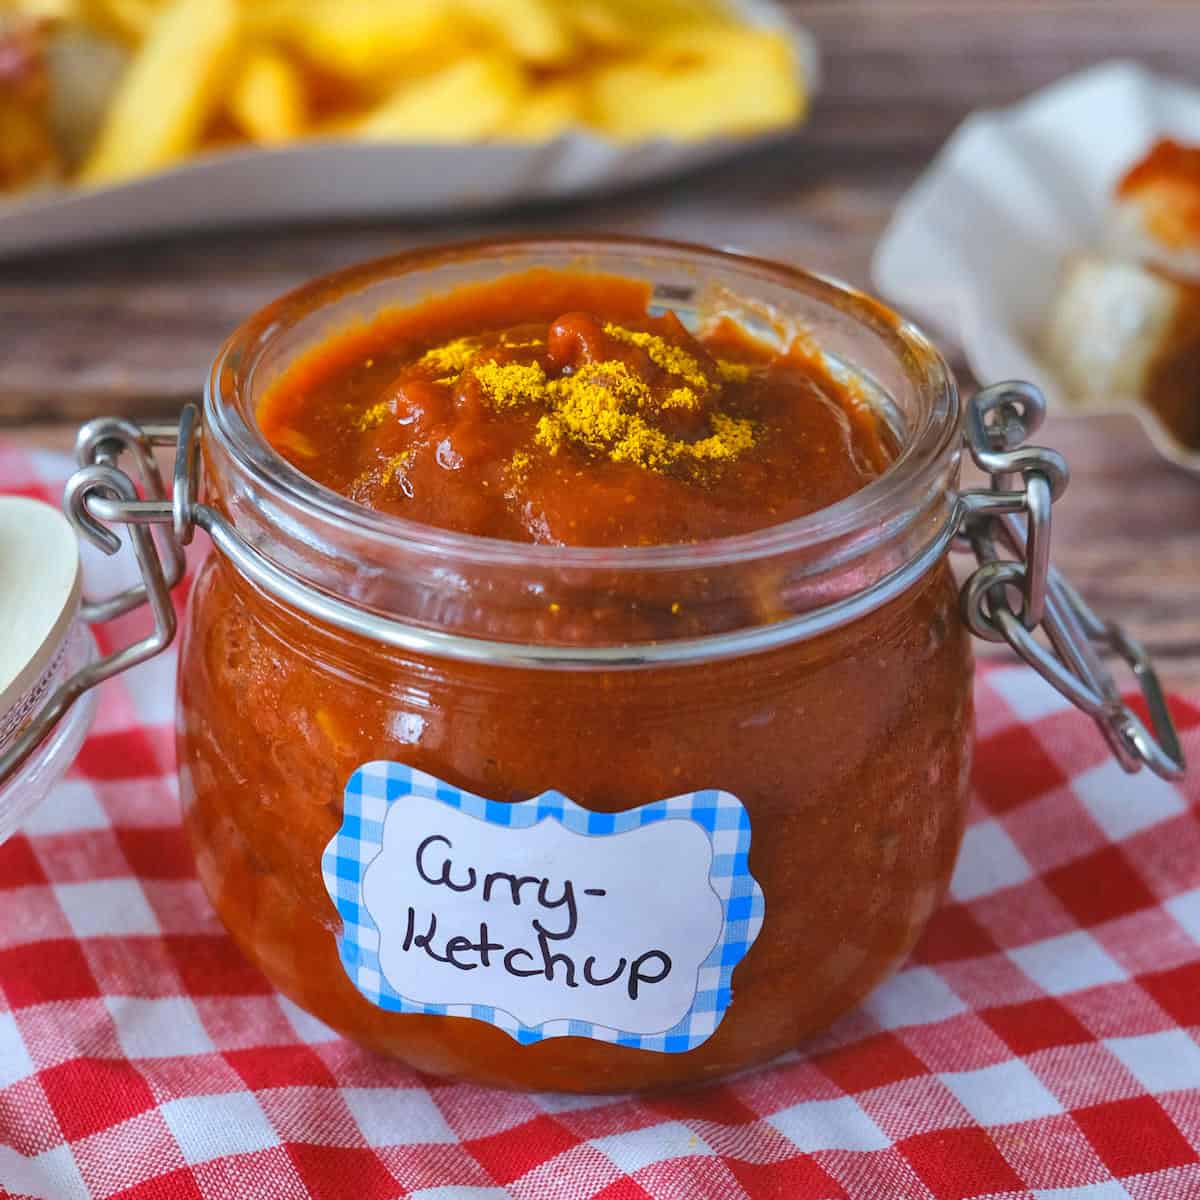 British Curry Sauce Recipe